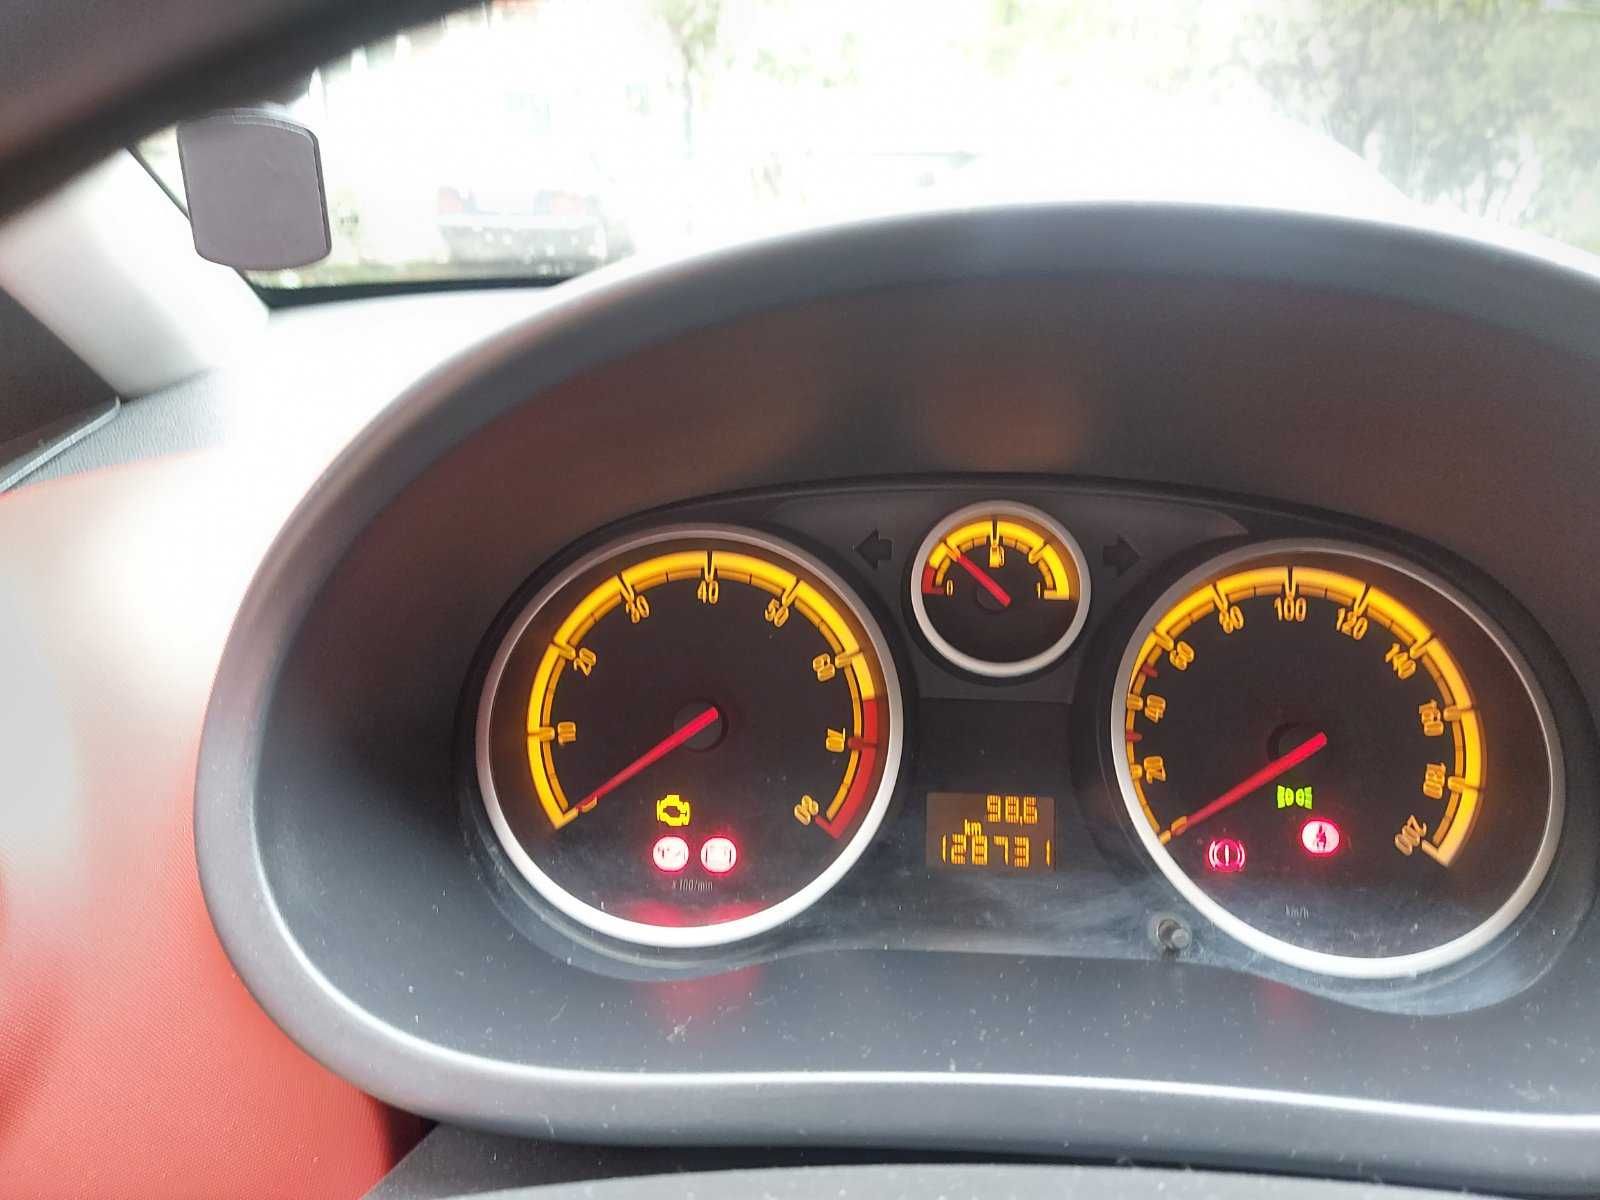 Opel Corsa в перфектно състояние, реални 136000 км.